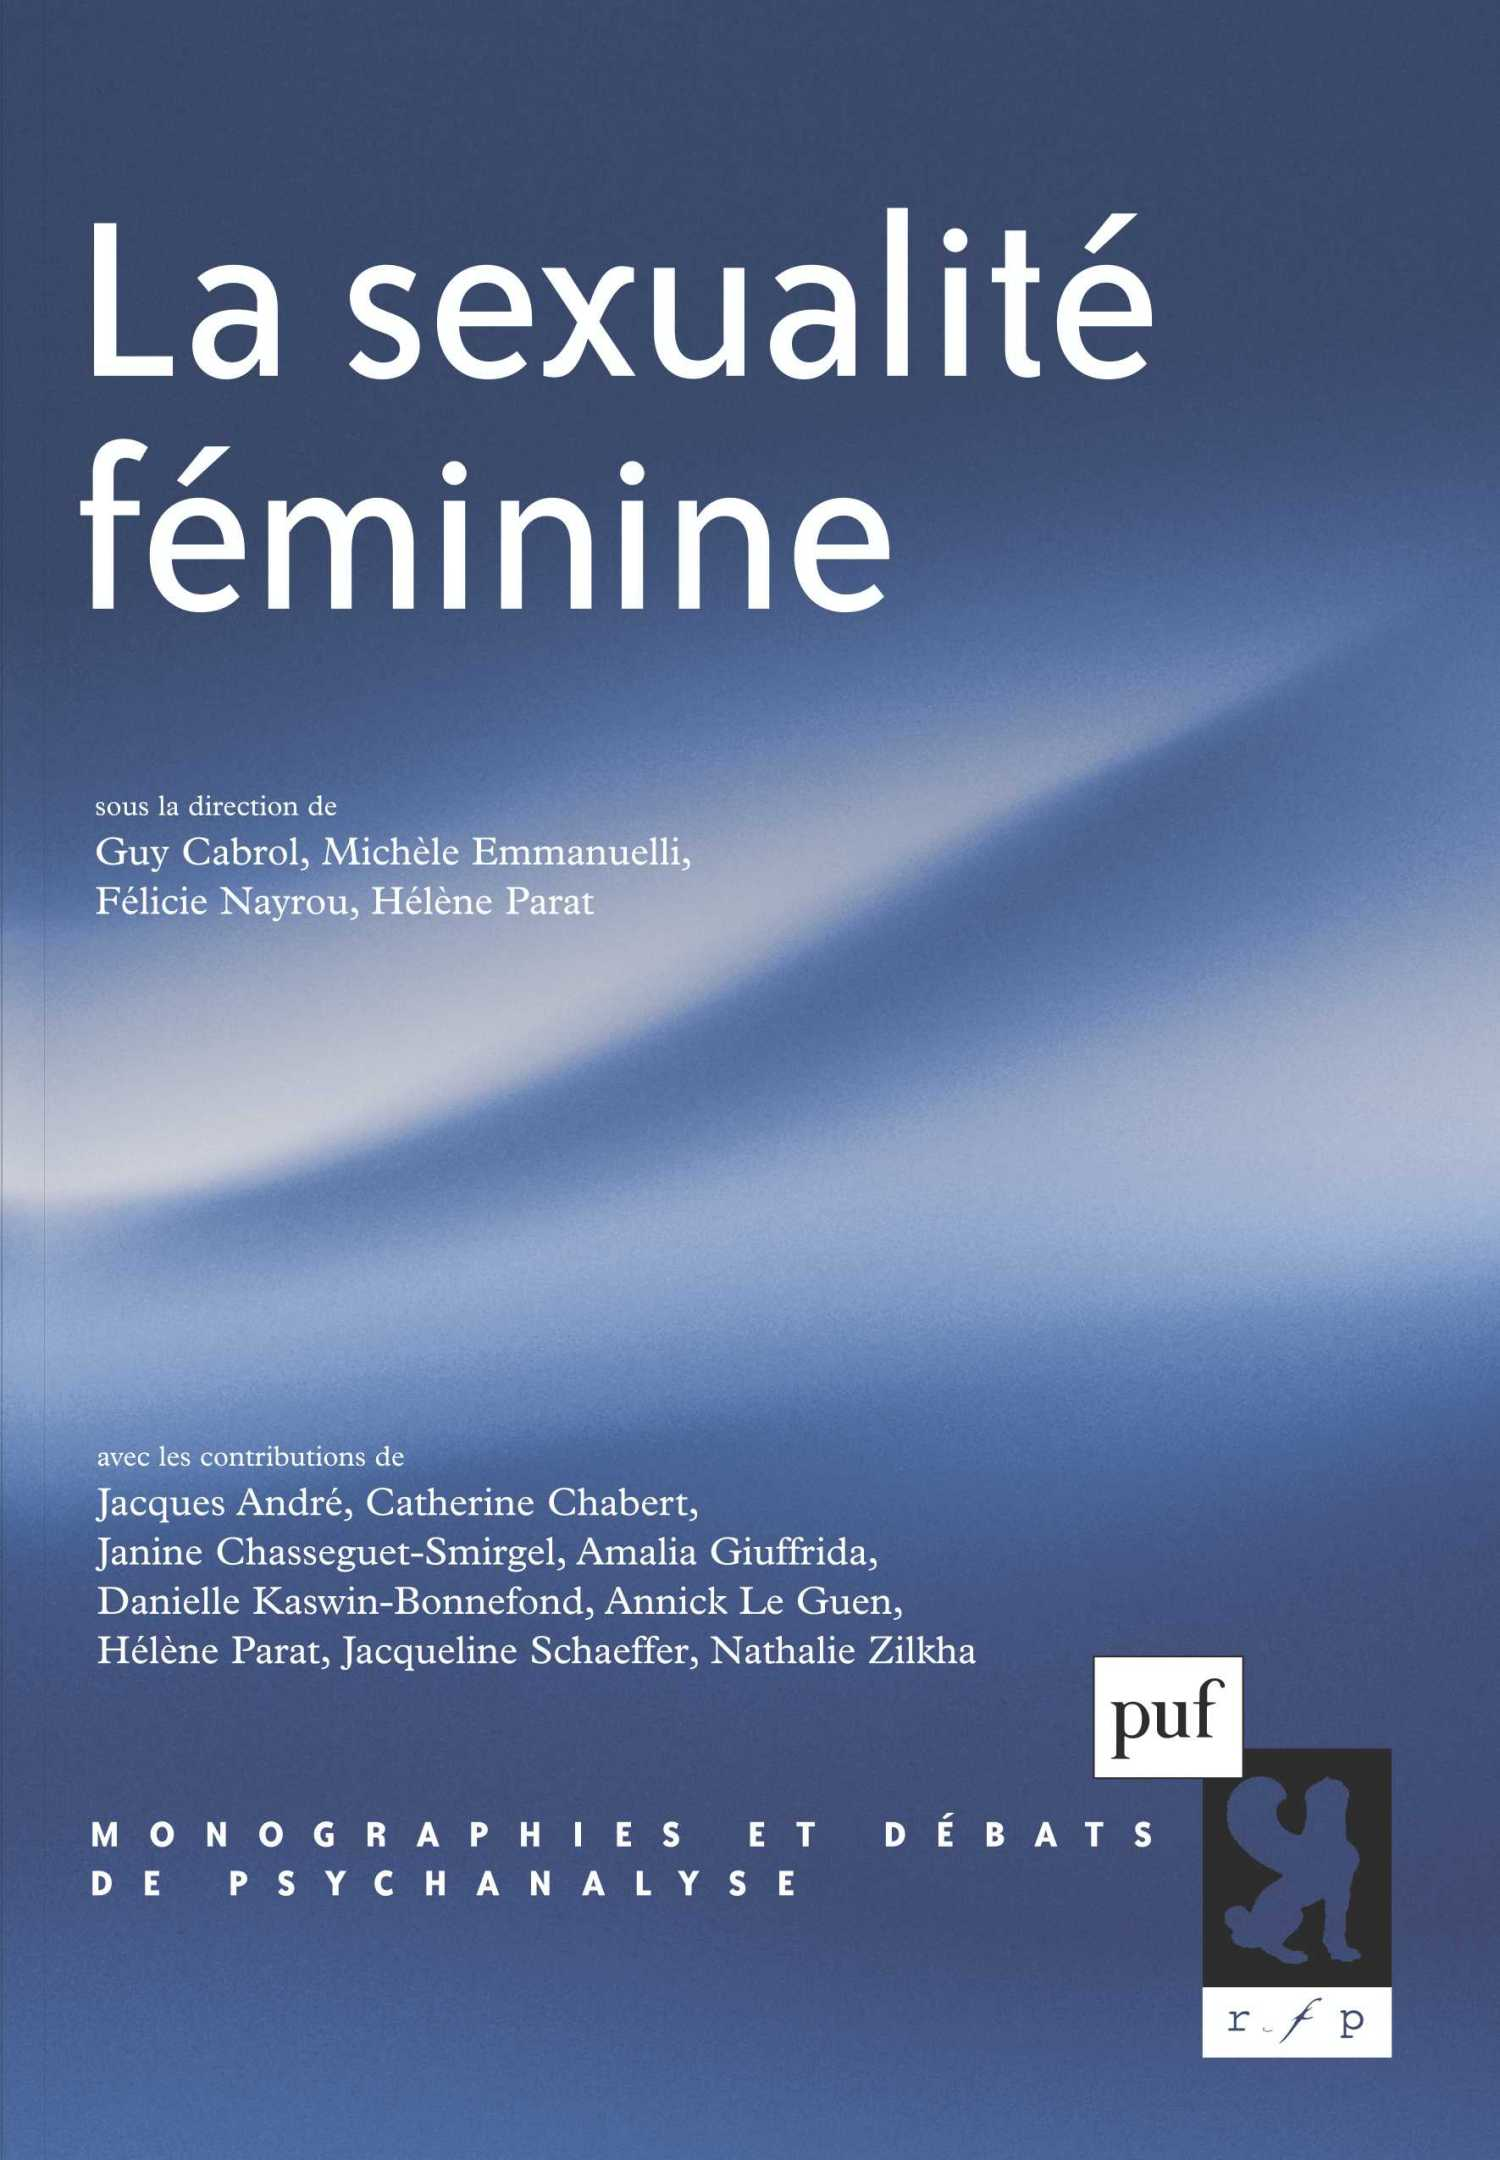 La sexualité féminine De Guy Cabrol, Michèle Emmanuelli, Félicie Nayrou et Hélène Parat - Presses Universitaires de France